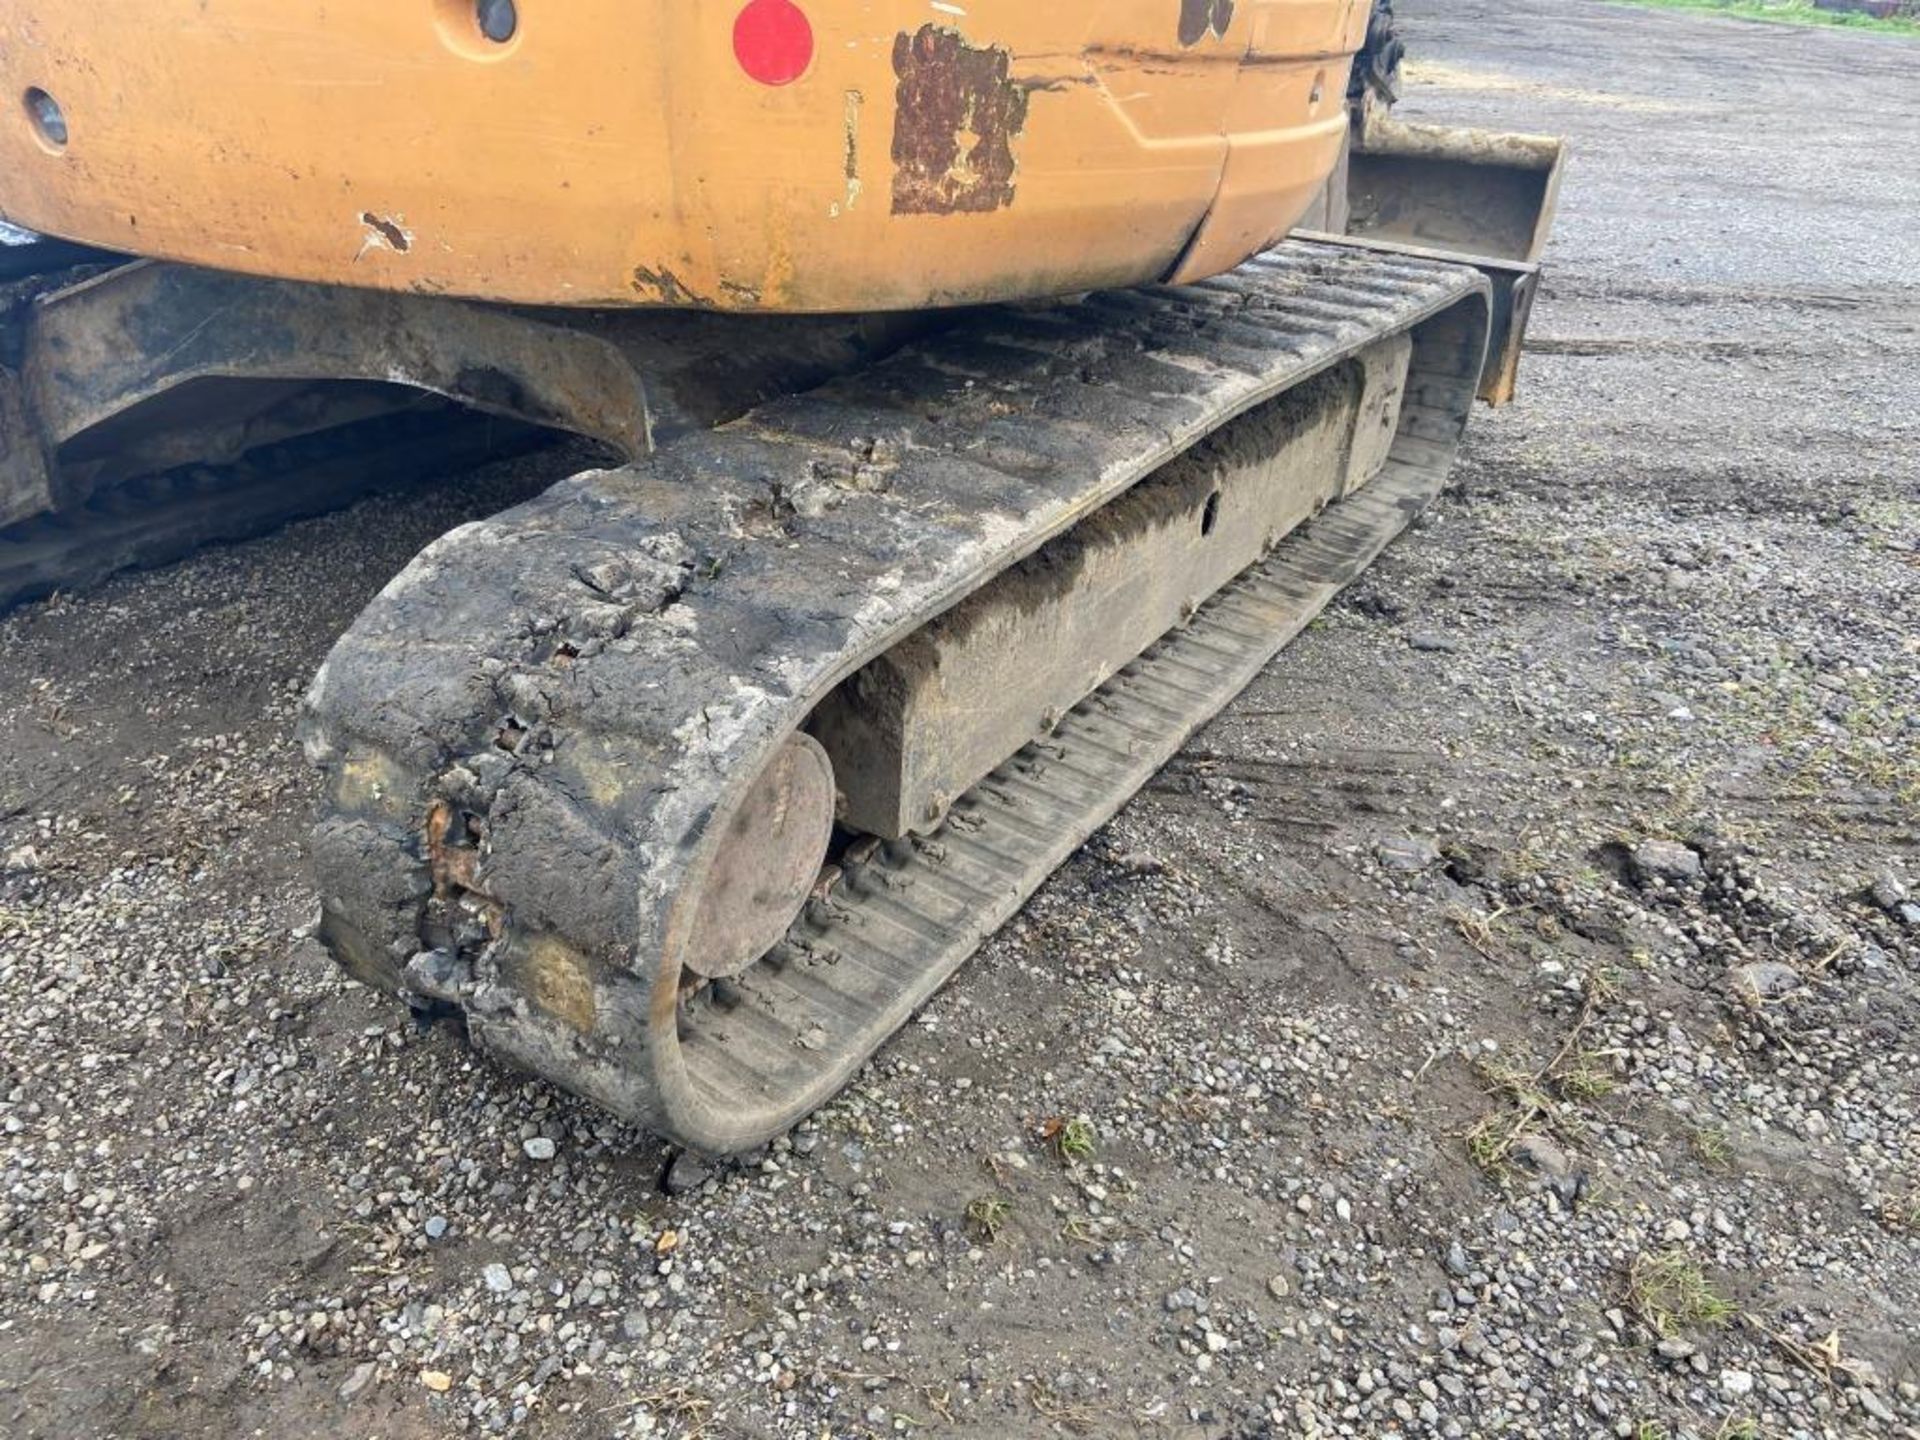 Case CX50B excavator (2013) - Image 20 of 20